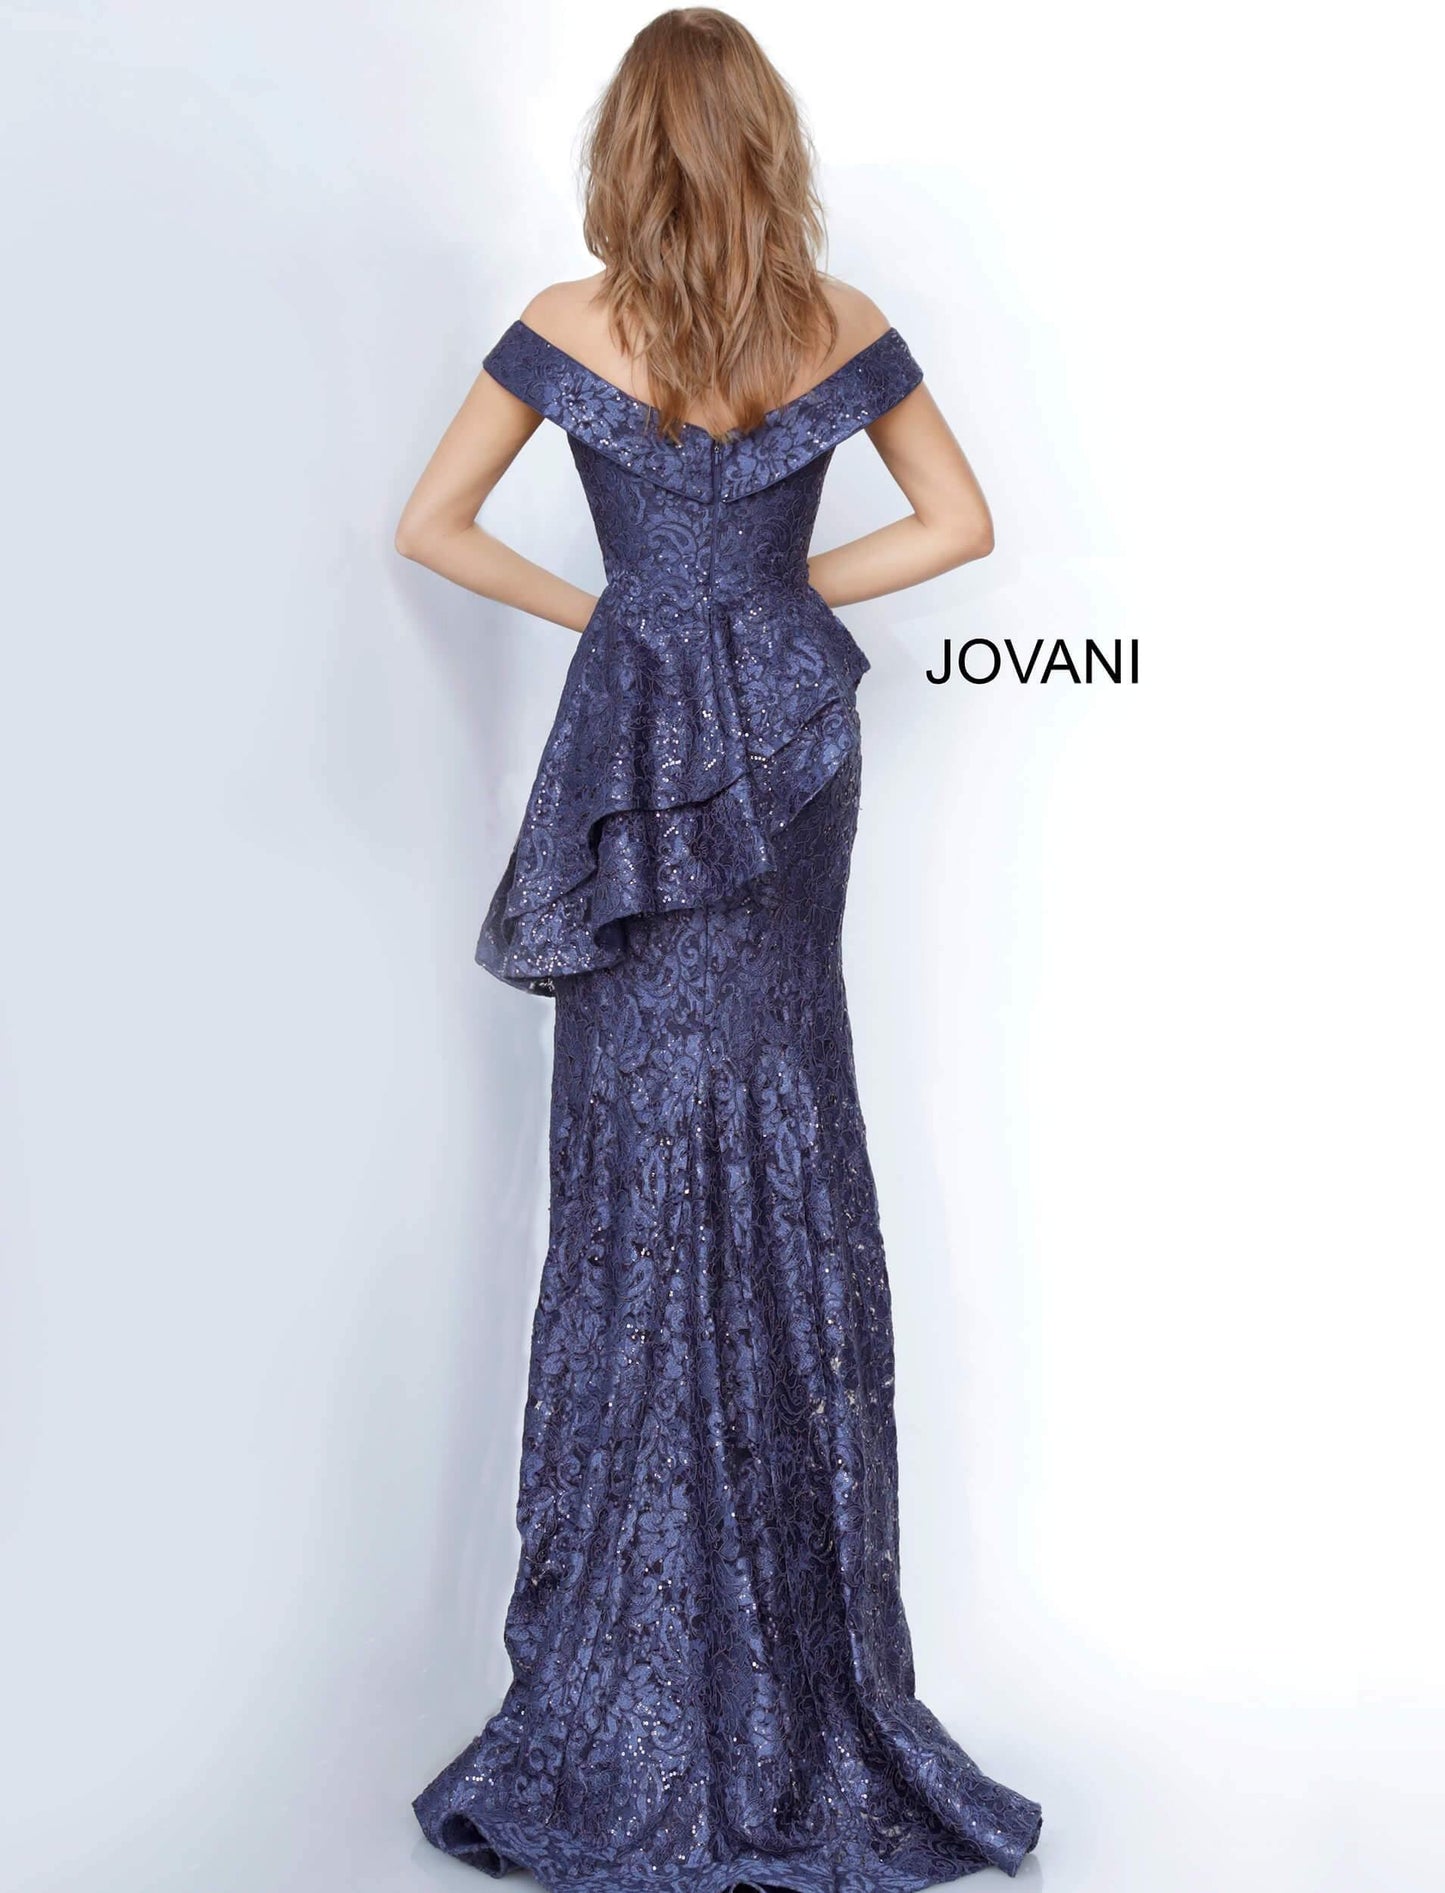 JVN By Jovani Long Formal Lace Dress JVN02911 - The Dress Outlet Jovani